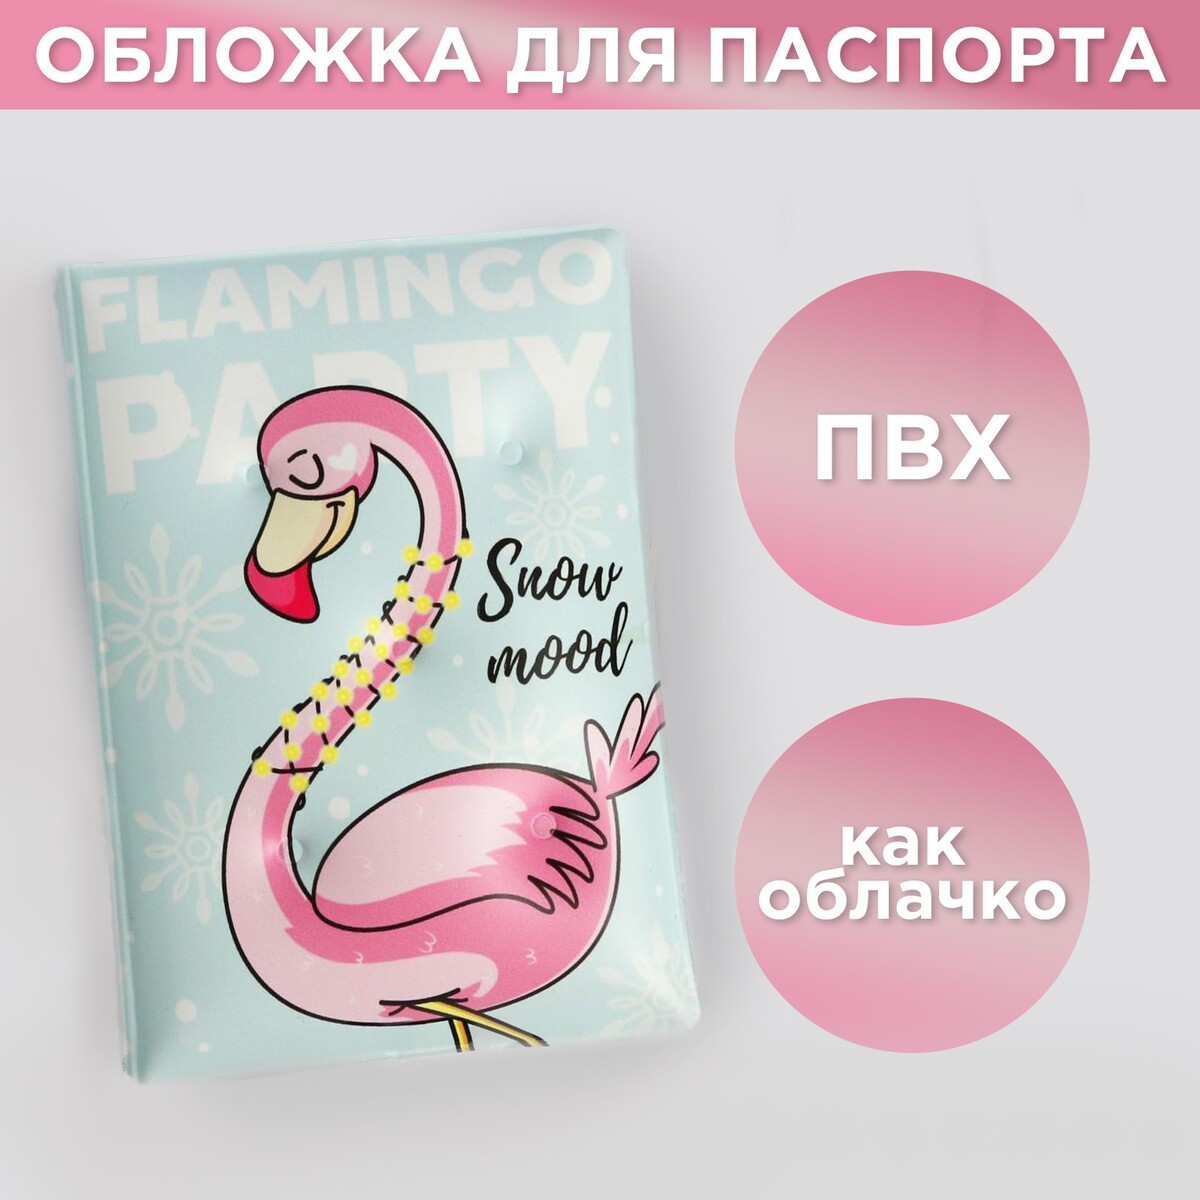 Воздушная паспортная обложка-облачко flamingo party No brand